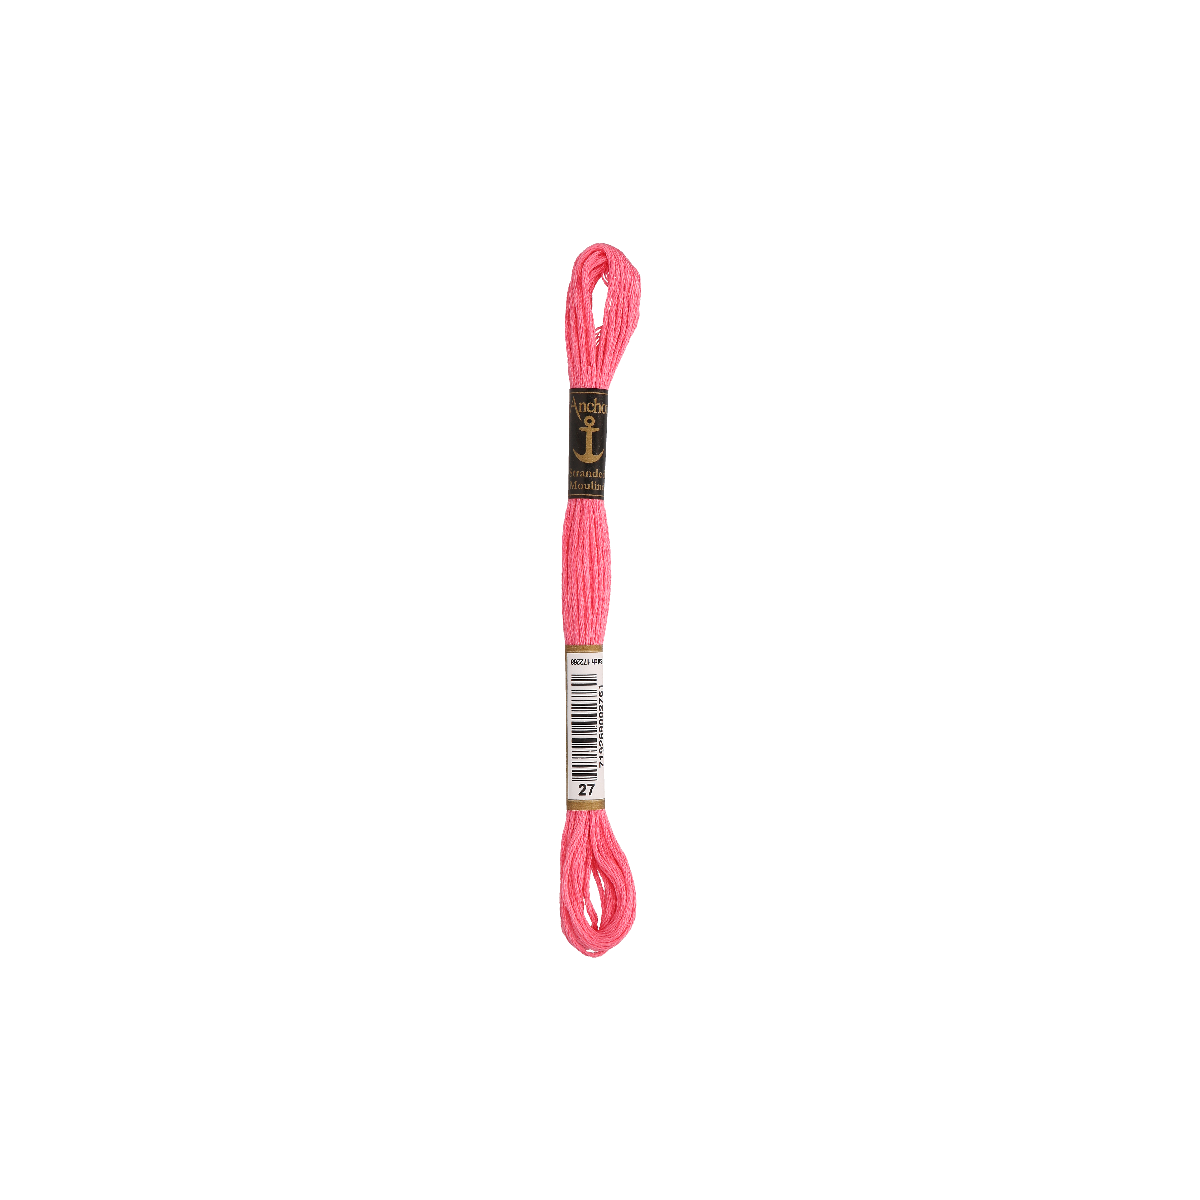 Anchor Sticktwist 8m, rosa, algodón, color 27, 6-hilo